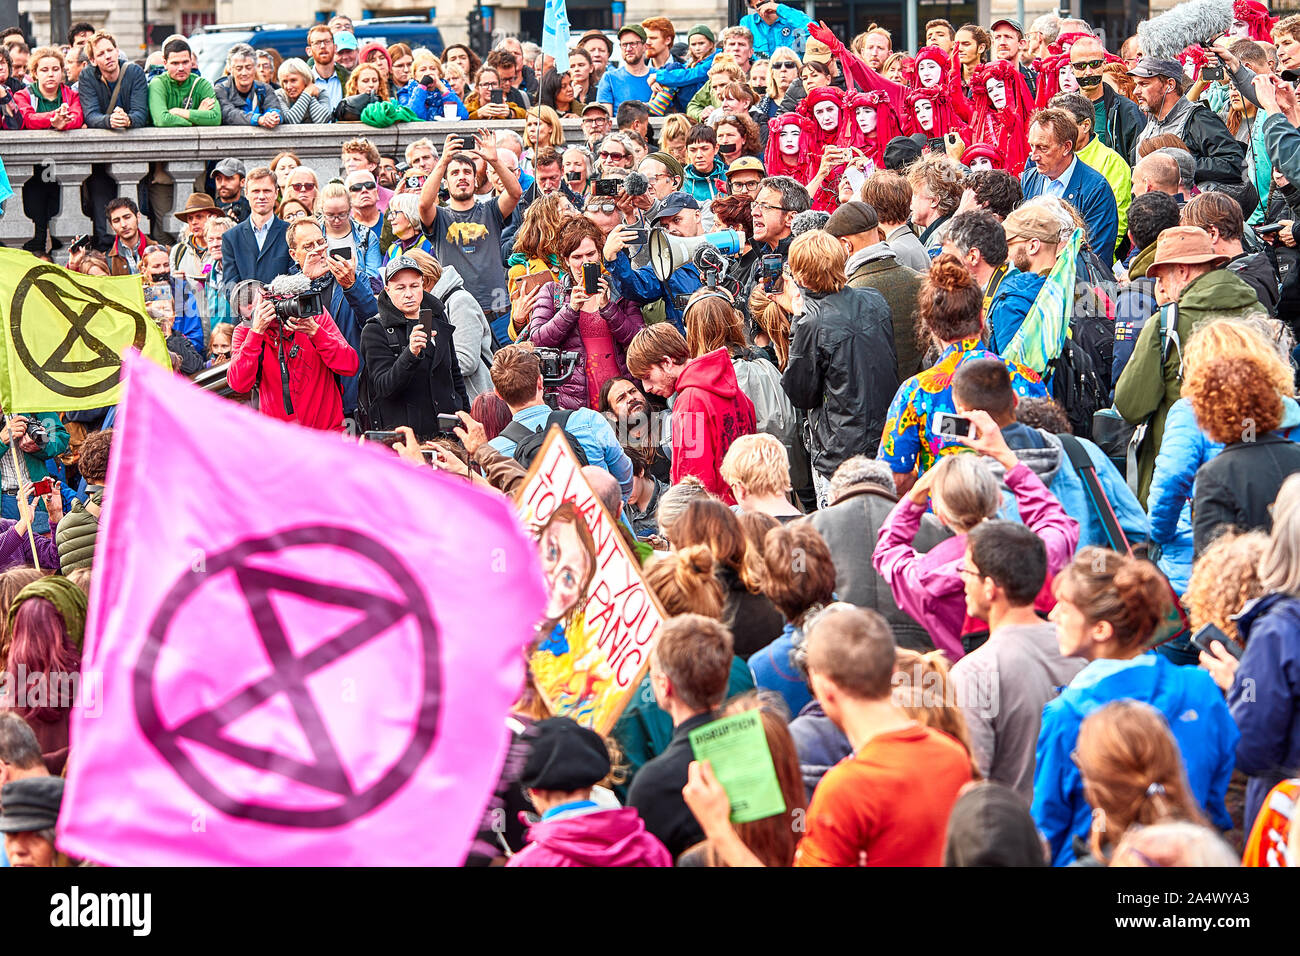 Londres, Reino Unido - 16 Oct, 2019: activista ambiental George Monbiot (centro con megáfono) aborda una multitud de partidarios de la rebelión de extinción en Trafalgar Square. Foto de stock